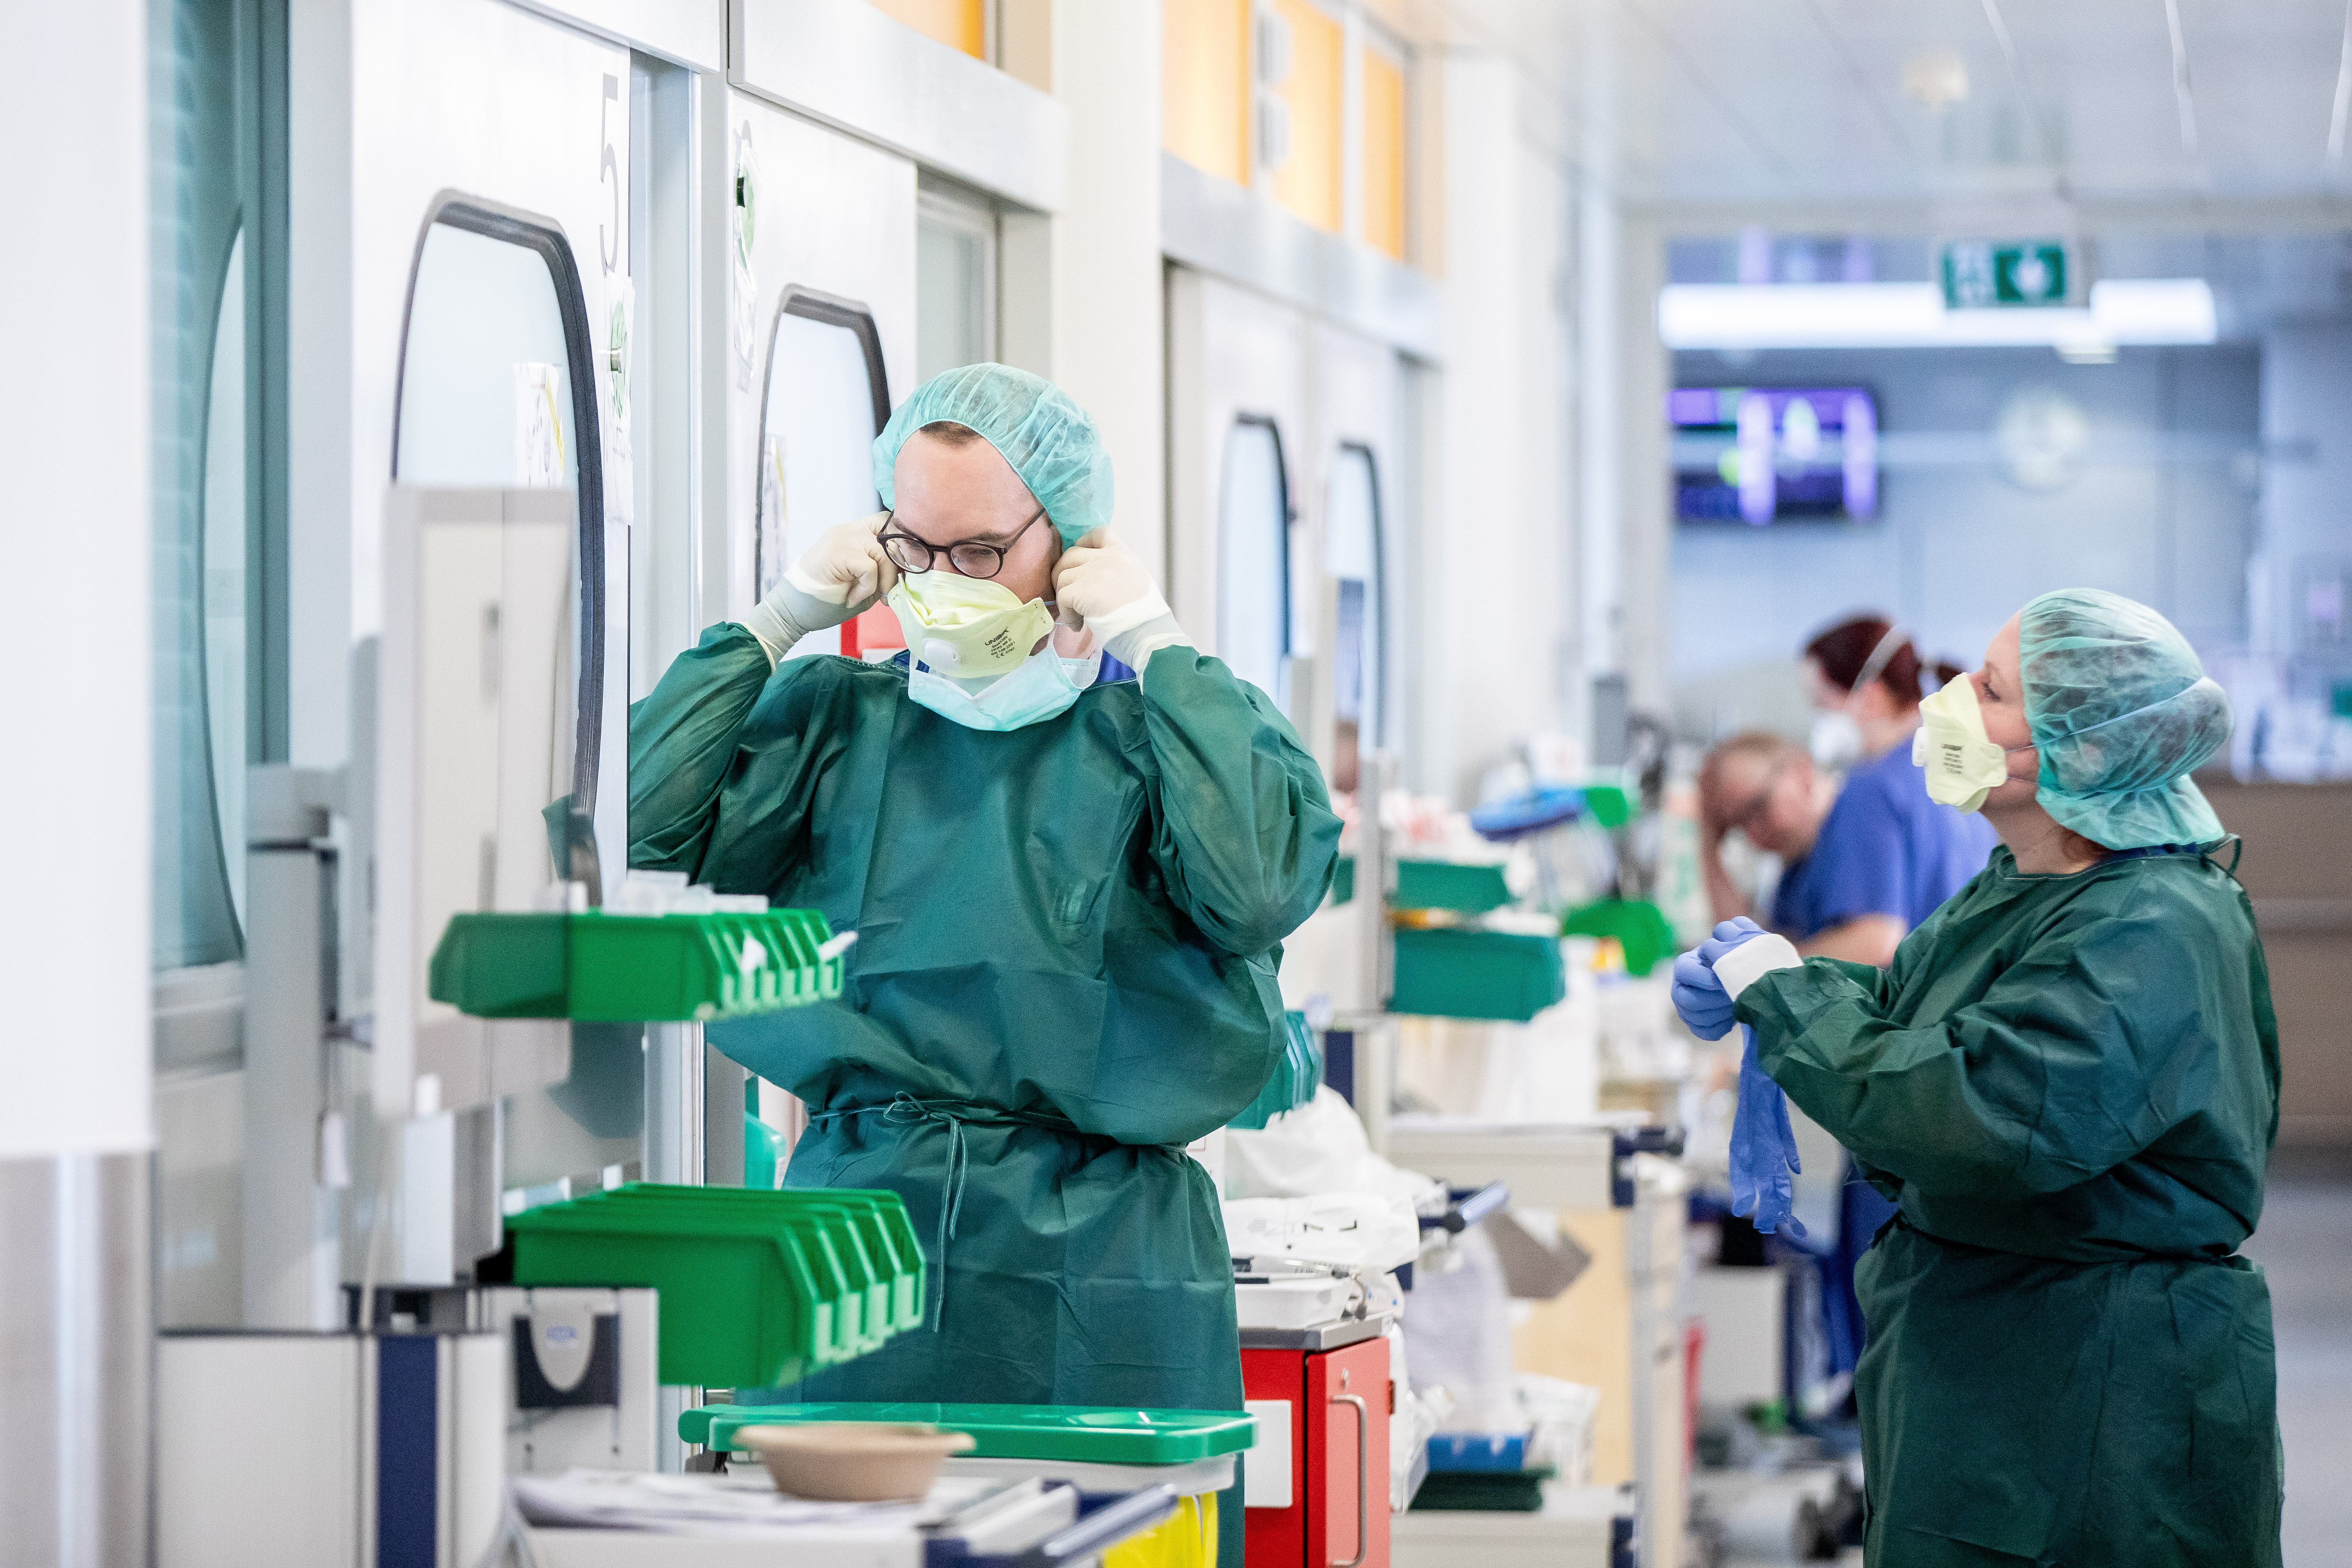 Instituto Coordenadas: éxito en Alemania por la eficiencia del sistema sanitario